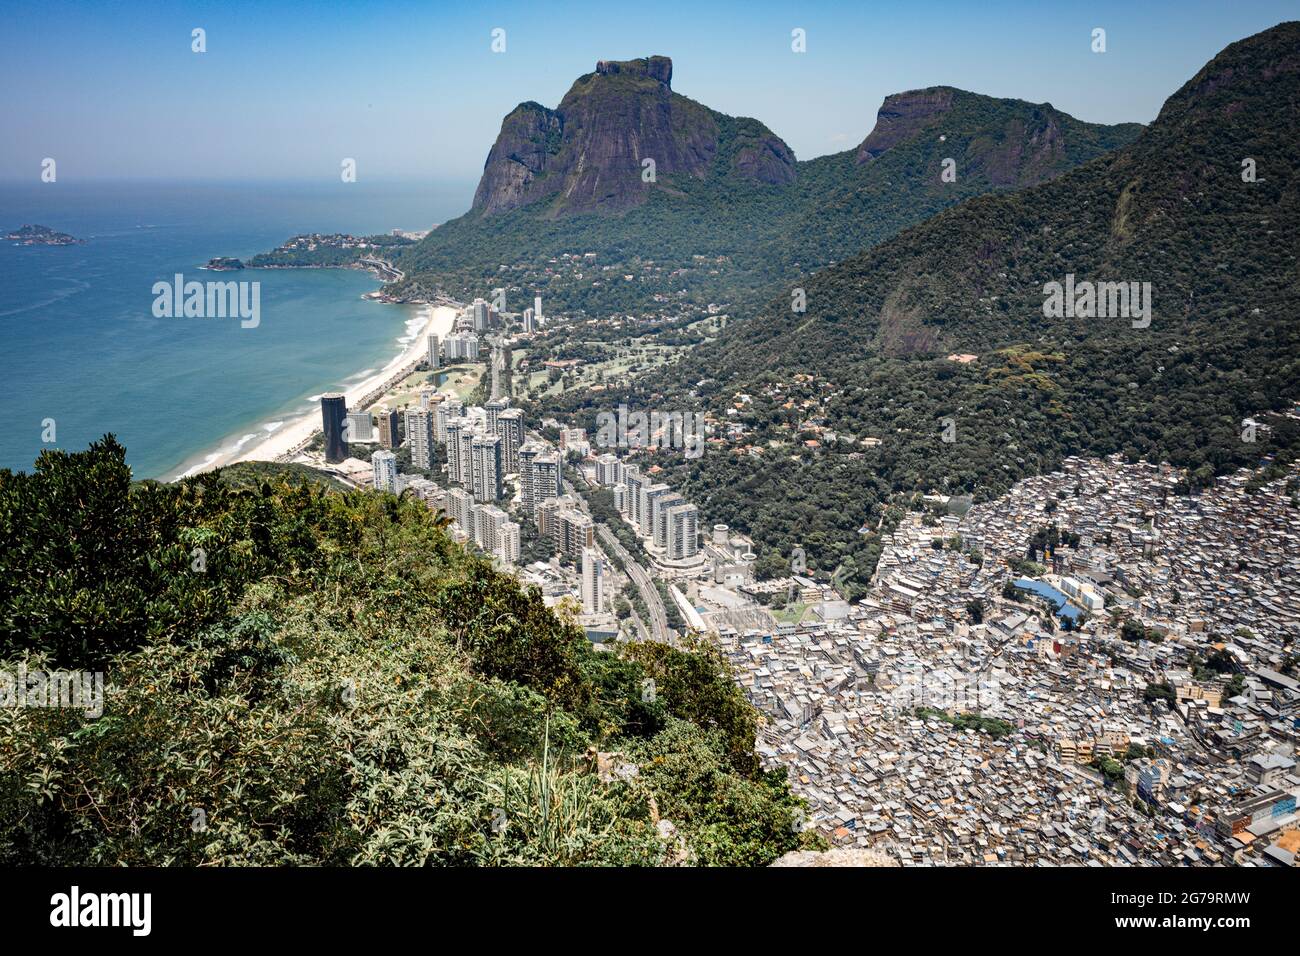 Panoramic view of SÃ£o Conrado neighborhood, Pedra da Gávea (Gávea Rock) and Rocinha slum from Morro Dois IrmÃ£os (Hill Two Brothers) - Rio de Janeiro, Brazil Stock Photo